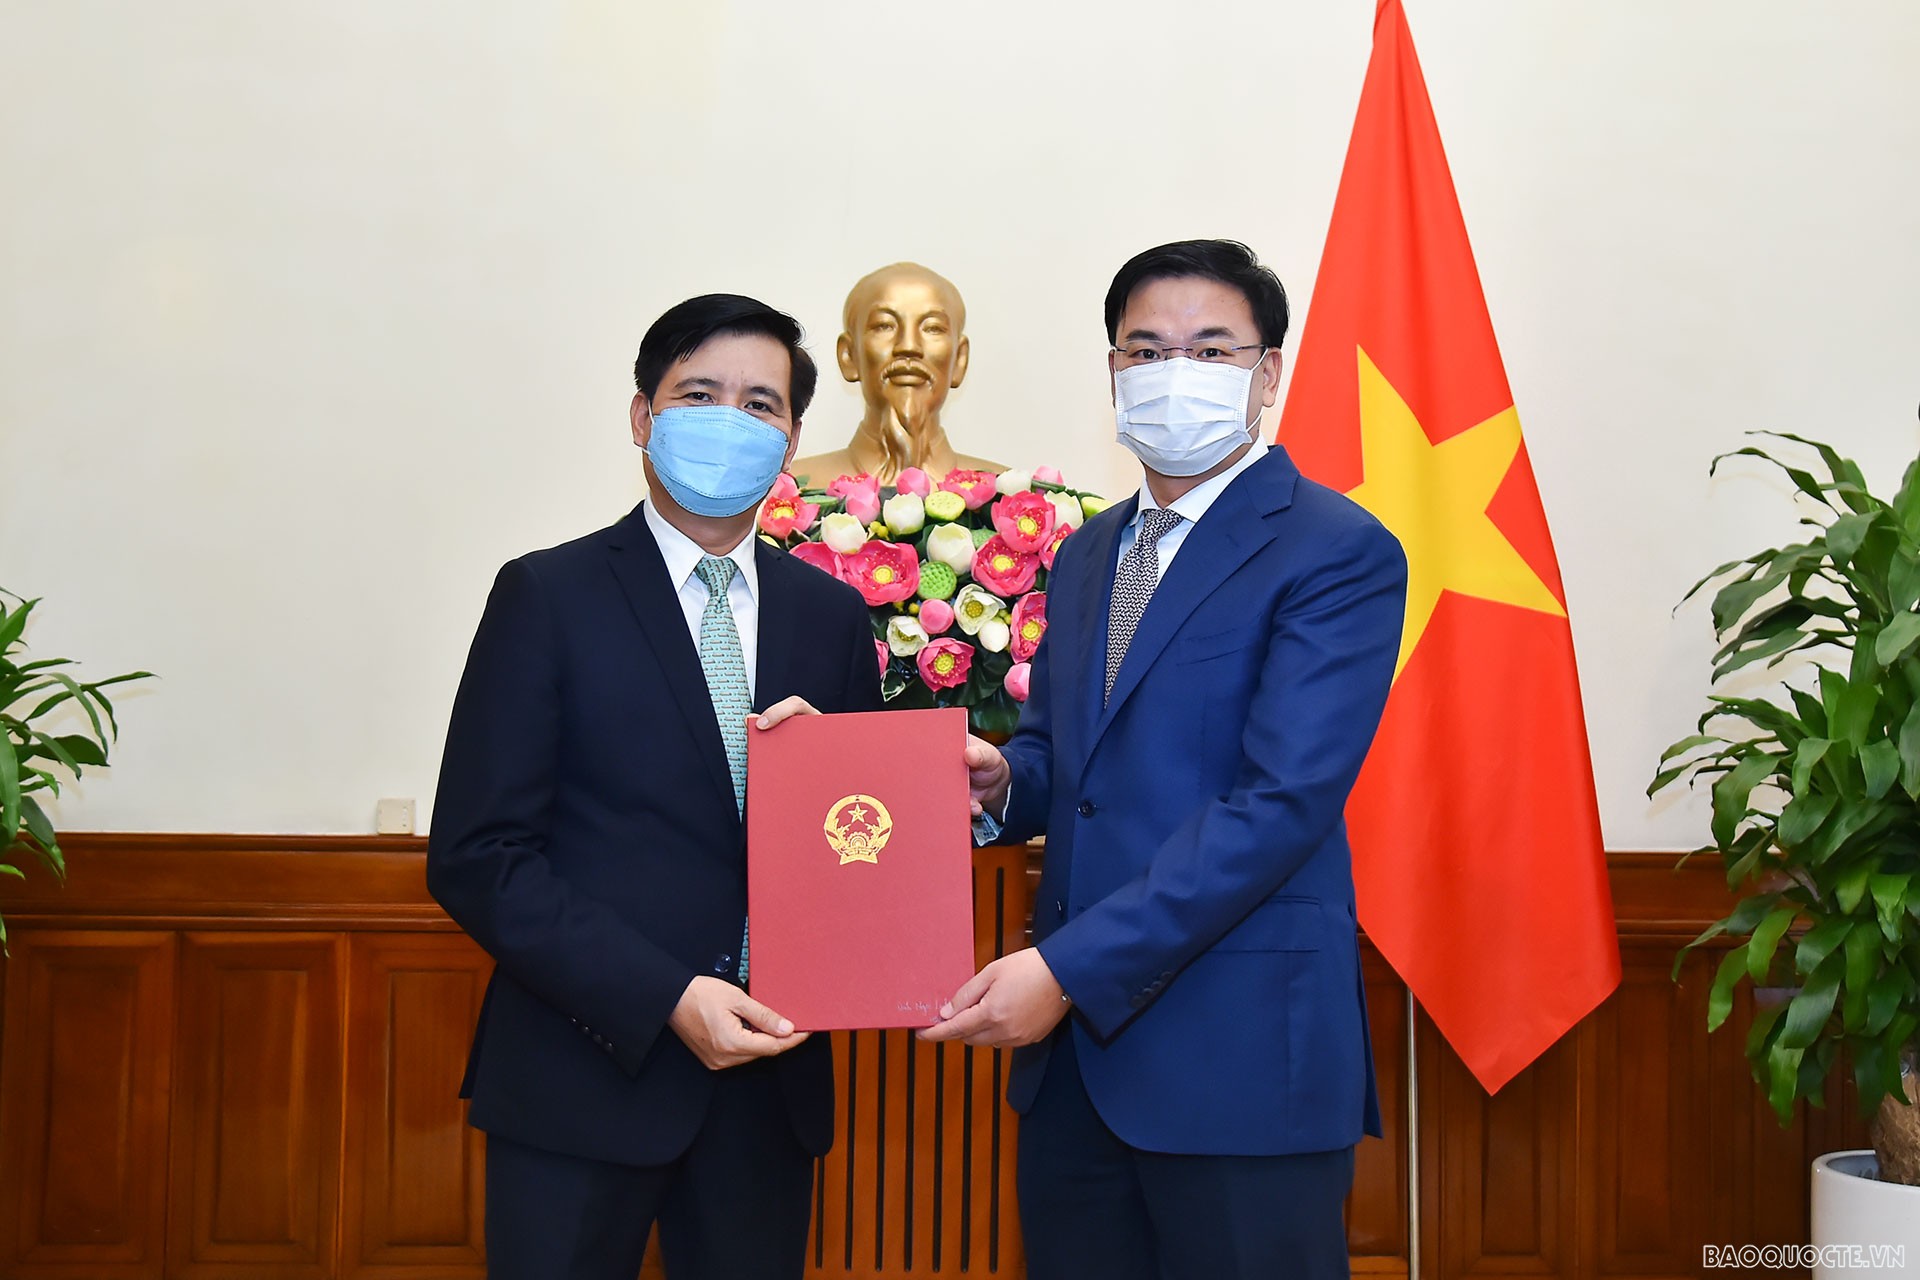 Thứ trưởng Ngoại giao Phạm Quang Hiệu đã trao quyết định bổ nhiệm ông Đinh Ngọc Linh, Quyền Vụ trưởng Vụ Biển, Ủy ban Biên giới quốc gia, giữ chức Vụ trưởng Vụ Biển, Ủy ban Biên giới quốc gia.